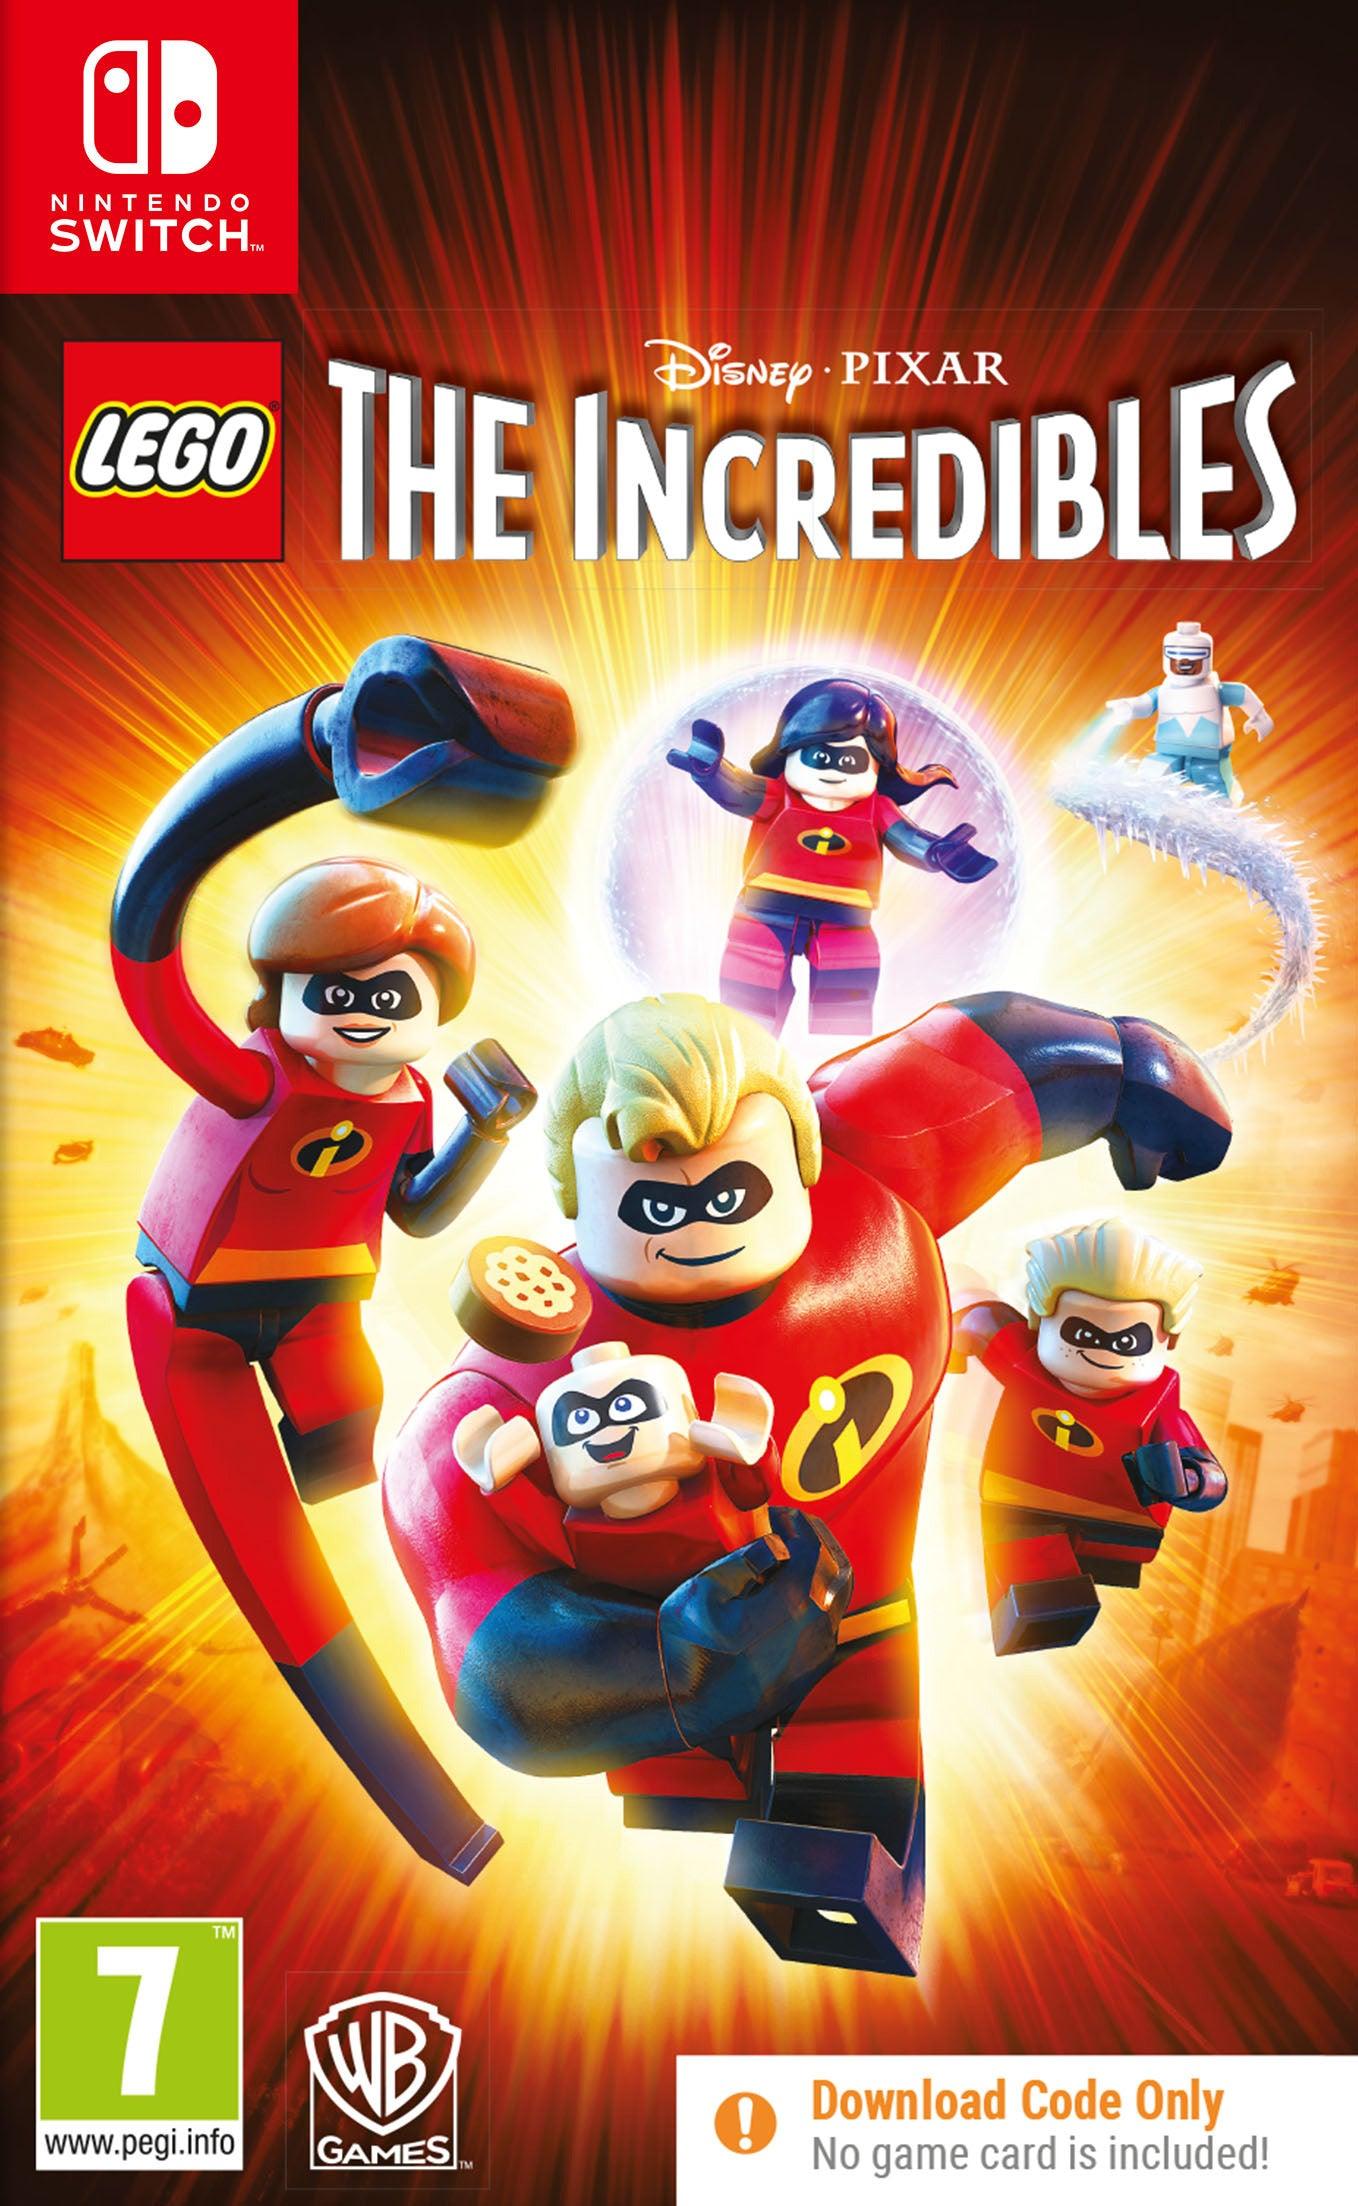 Lego The Incredibles Cib - Want a New Gadget